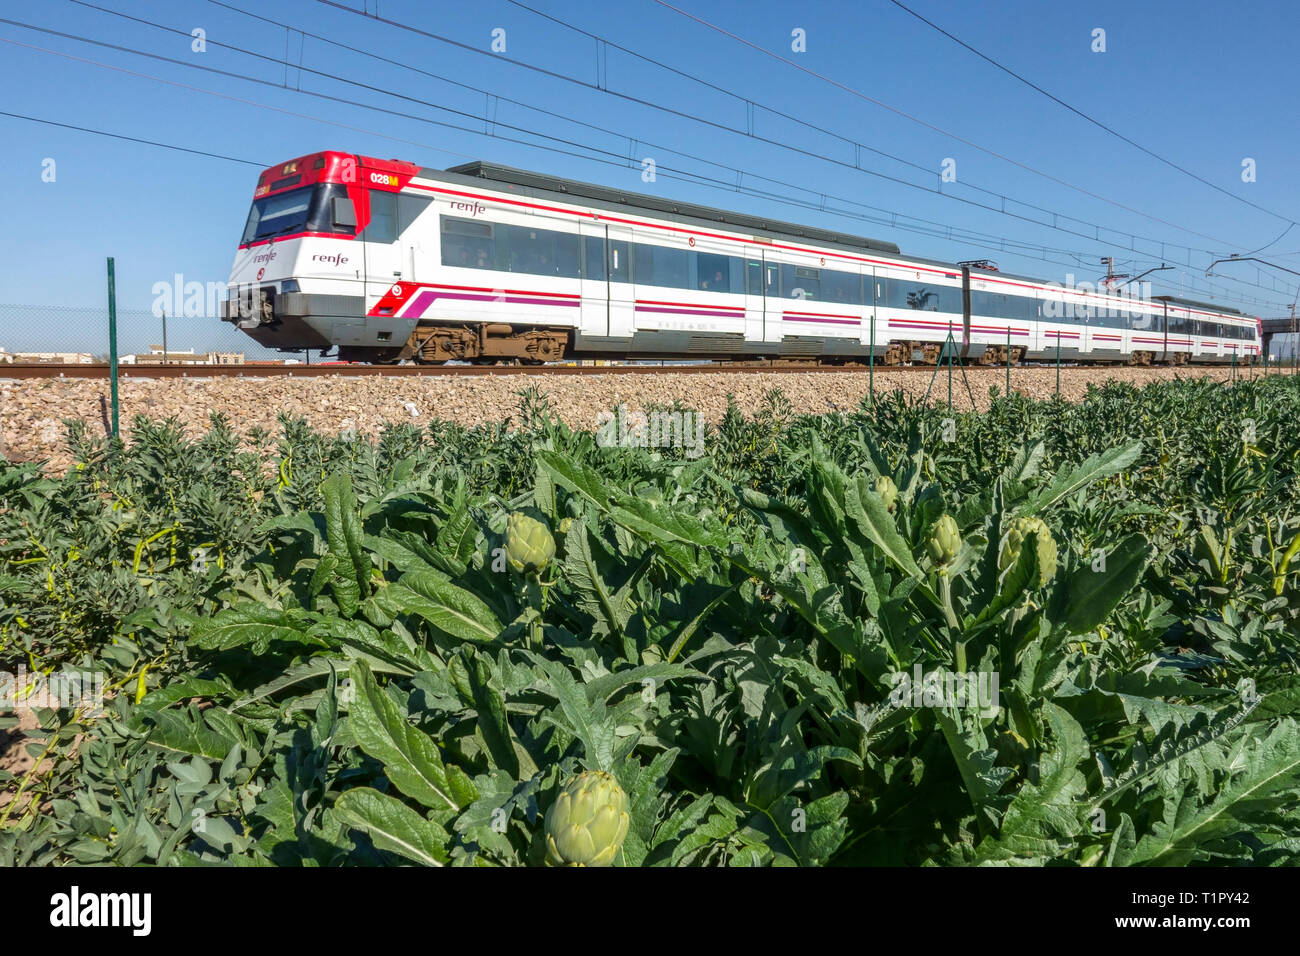 Cercanias - train de voyageurs traversant une campagne agricole avec des artichauts Espagne champ agricole Valence Espagne train banlieue Banque D'Images